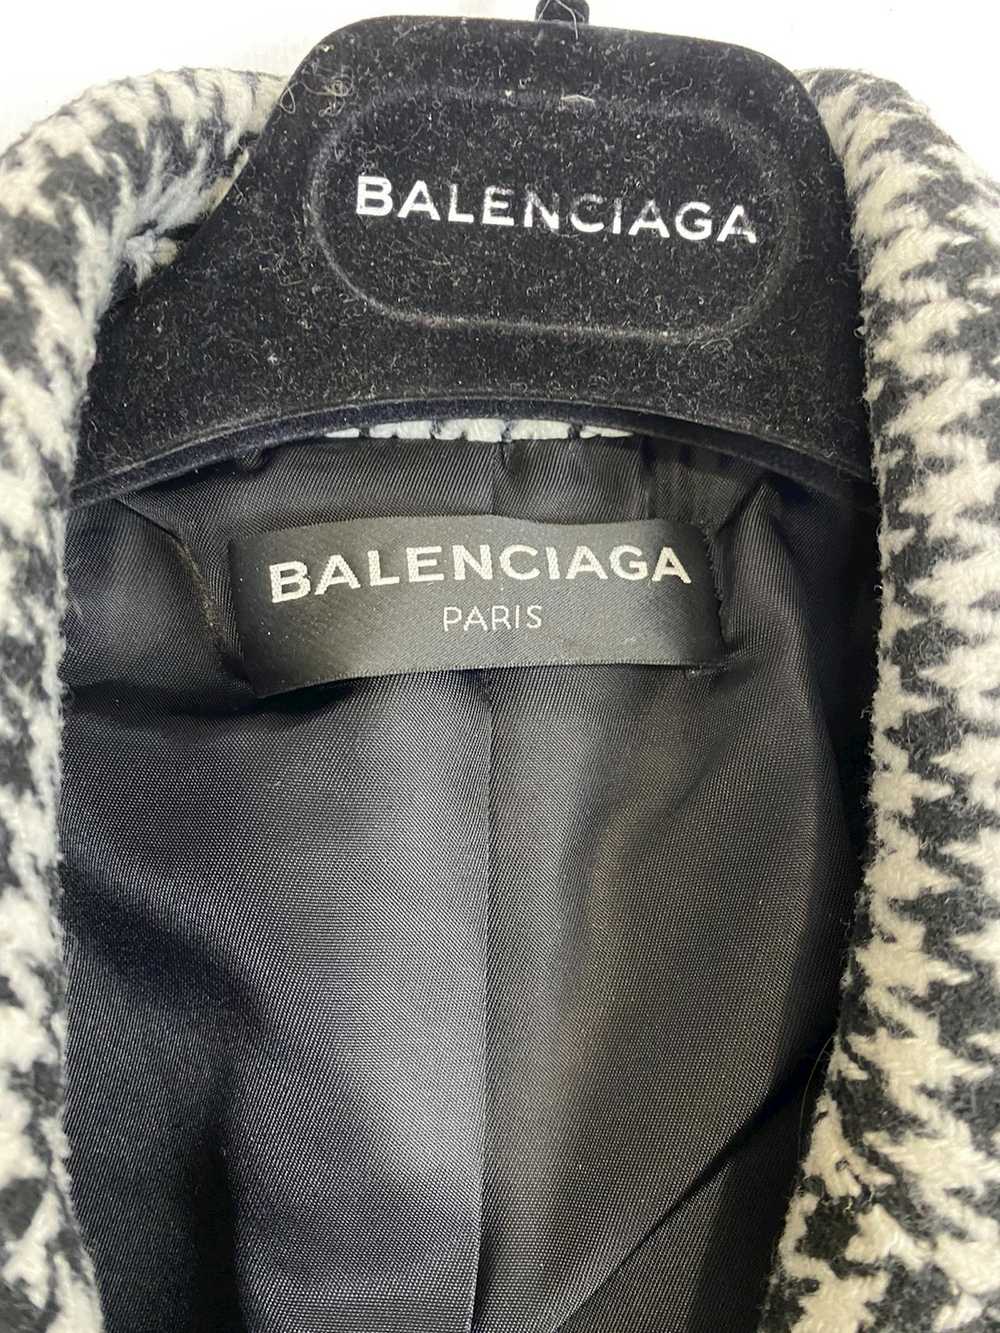 Balenciaga Balenciaga coat jacket rare women XS - image 6